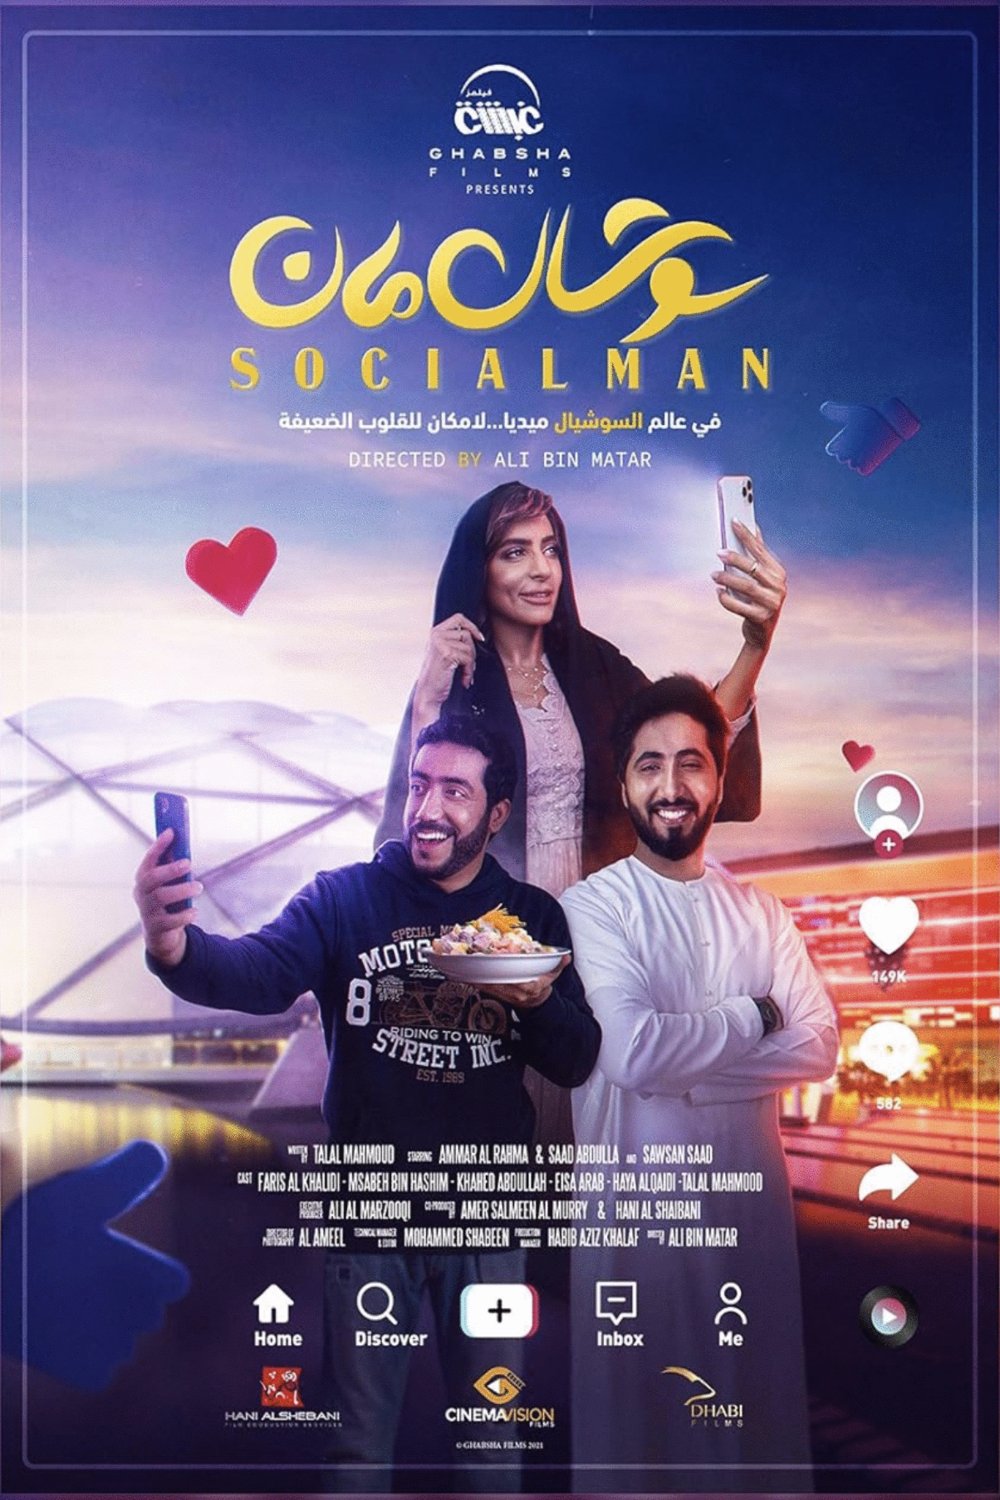 L'affiche originale du film Social Man en arabe